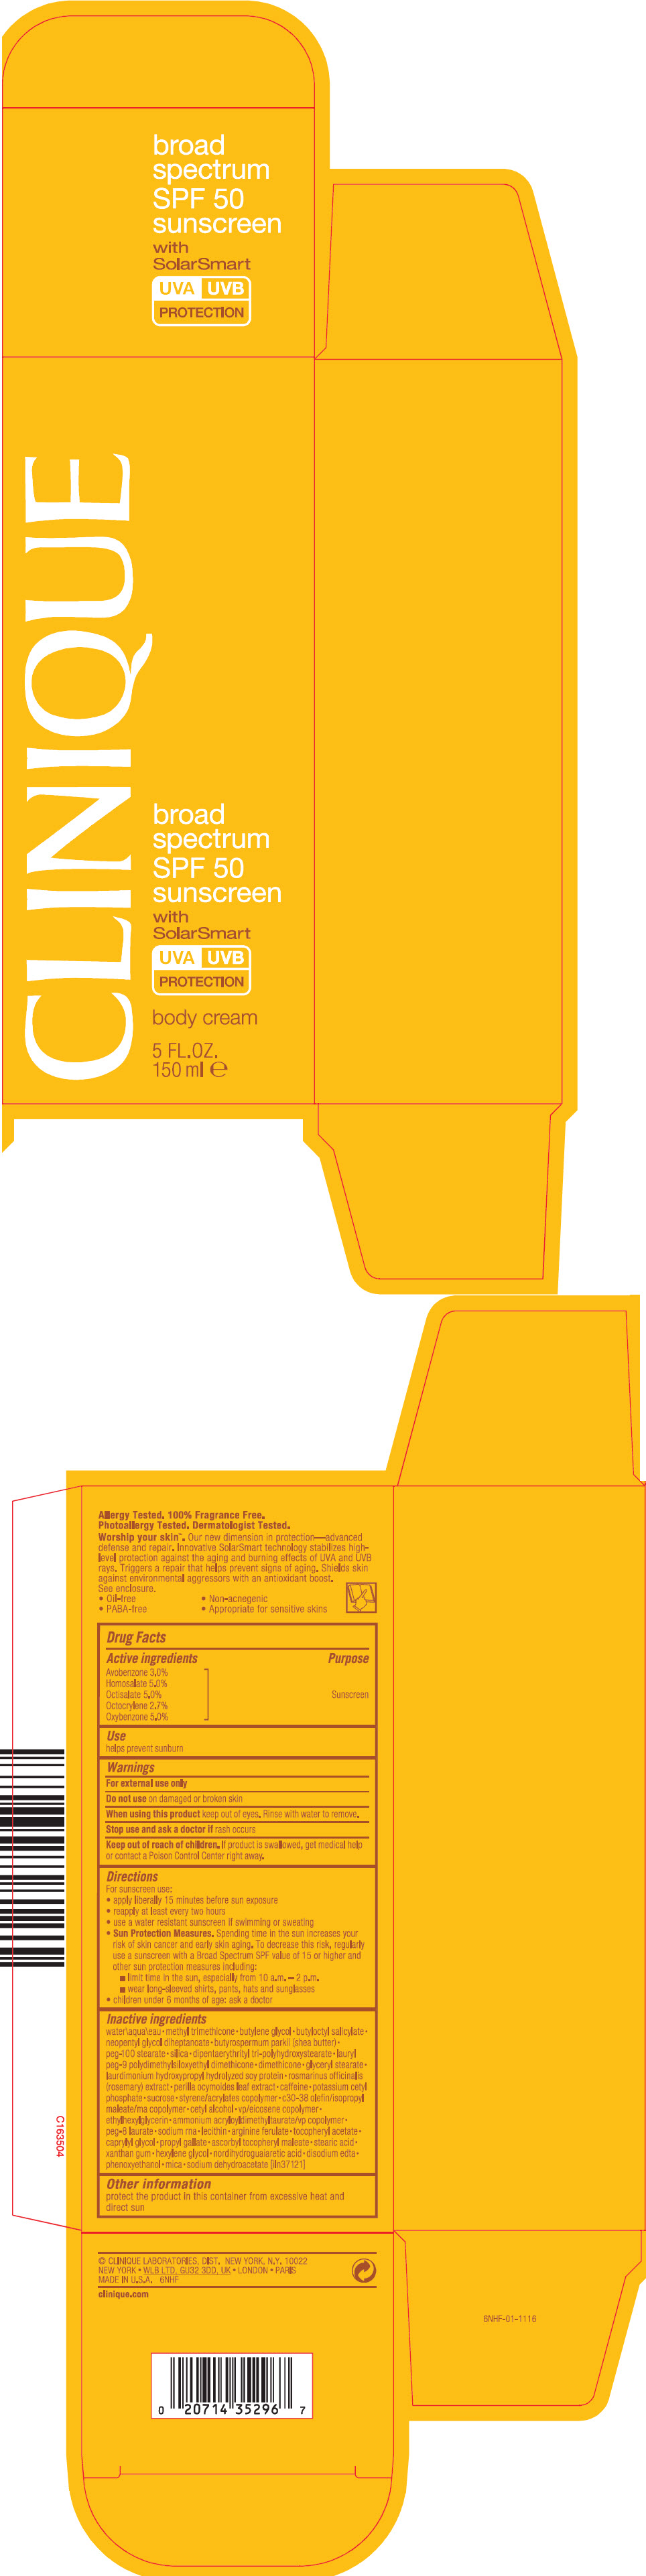 PRINCIPAL DISPLAY PANEL - 150 ml Tube Carton